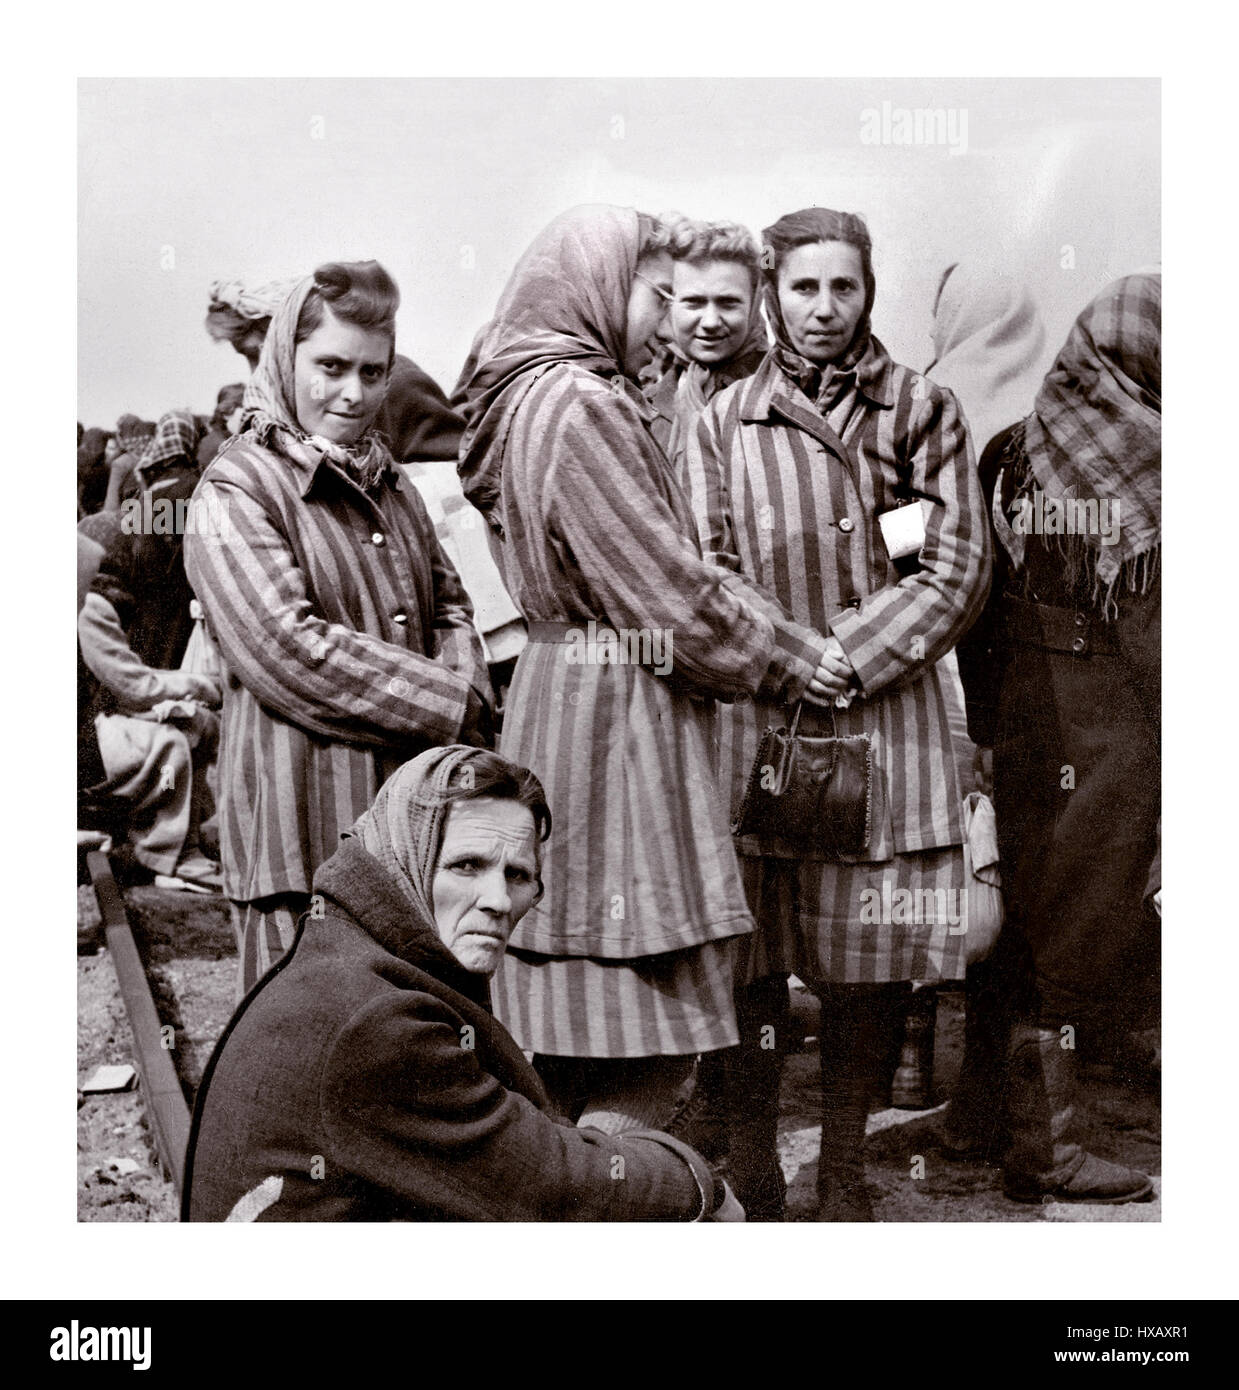 RAVENSBRÜCK Gefangene Frauen in gestreifter Lageruniform des Konzentrations- und Vernichtungslagers Ravensbrück, das WW2 von Nazi-Deutschland geführt wurde und gerade 1945 von der Roten Armee befreit wurde. Das ausschließlich weibliche Gefangenenlager befand sich 90 km nördlich von Berlin…Nazi-Deutschland Zweiten Weltkrieg Stockfoto